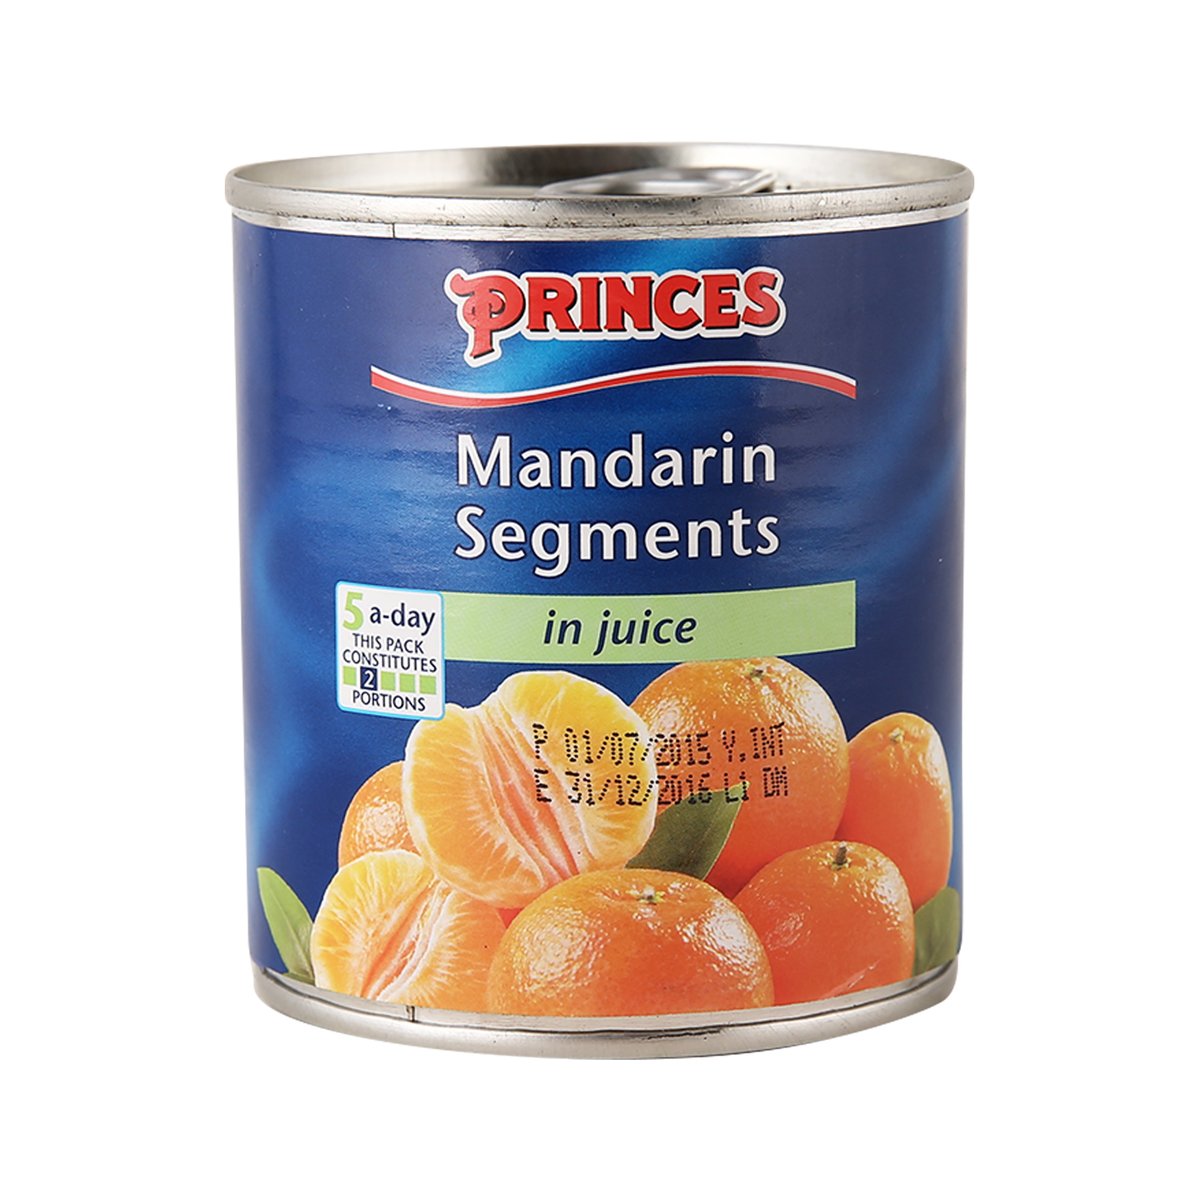 Buy Princes Mandarin Segments Juice 298g Online at Best Price | Other Canned Fruits | Lulu UAE in UAE